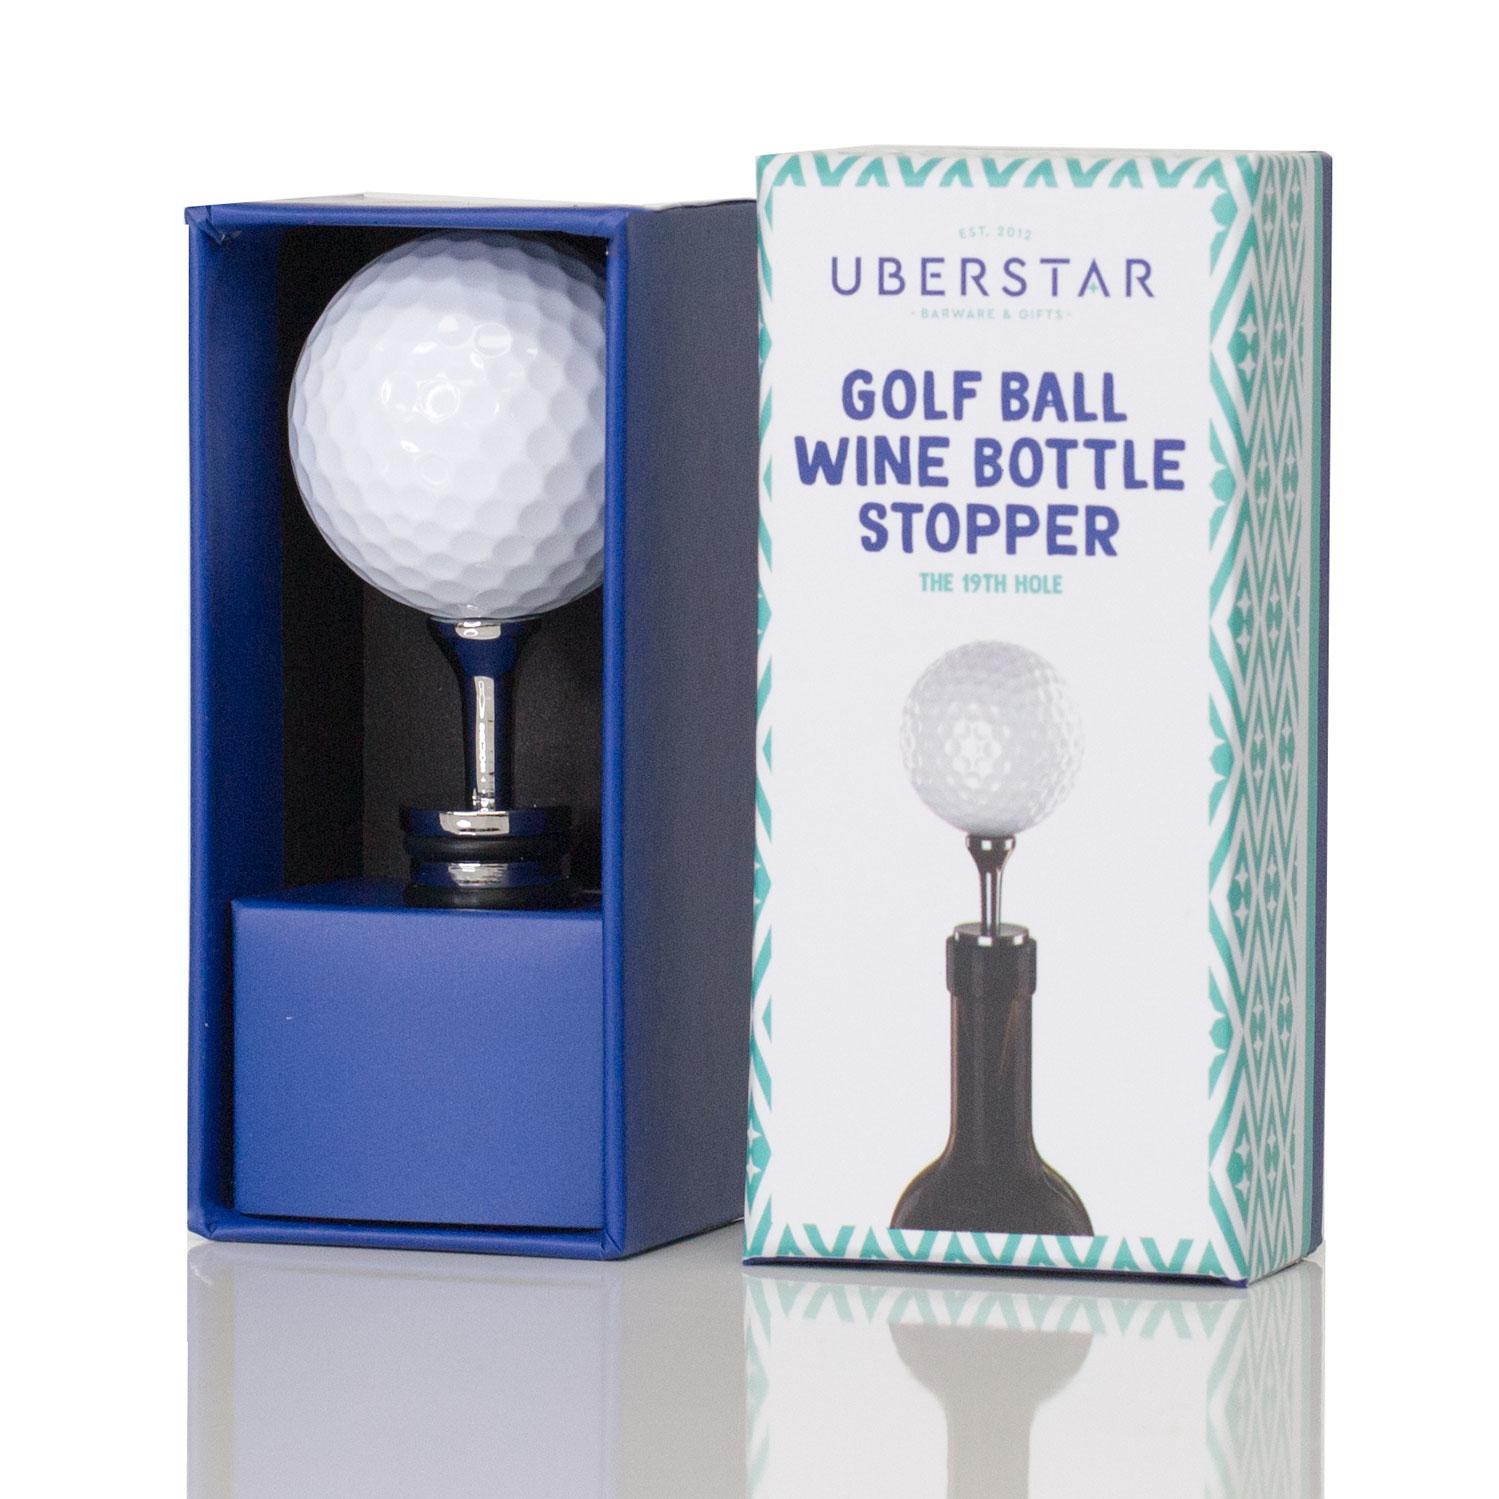 Uberstar Golf Ball Wine Stopper